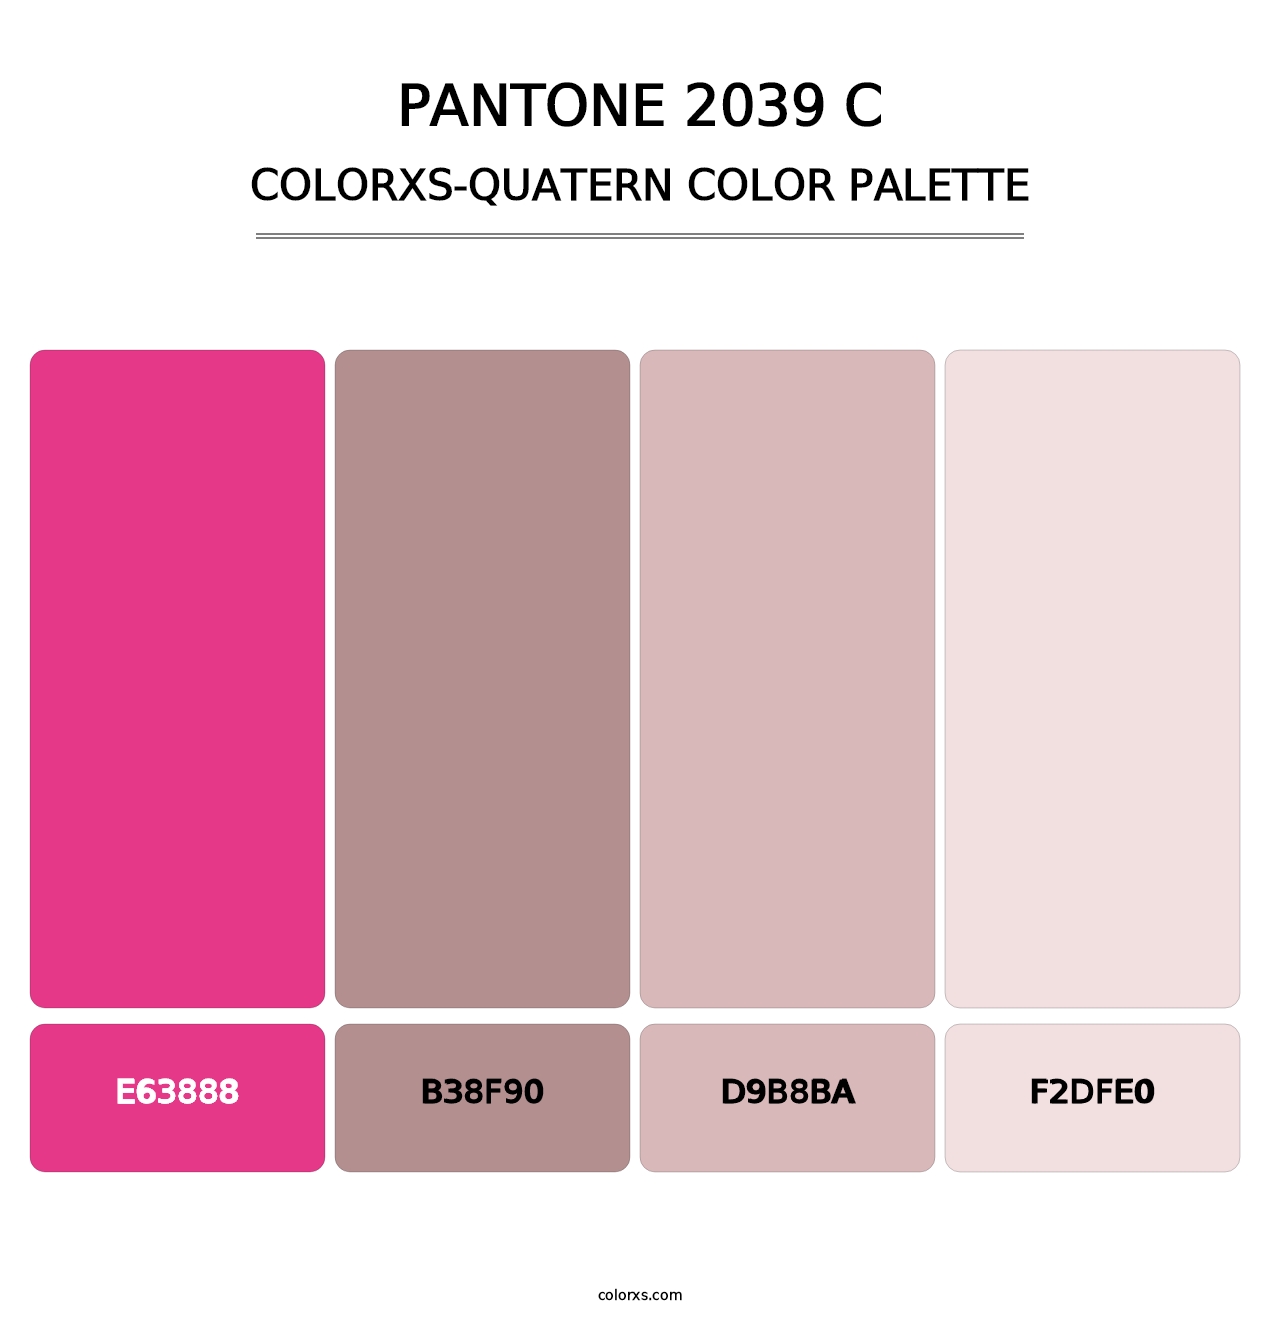 PANTONE 2039 C - Colorxs Quatern Palette